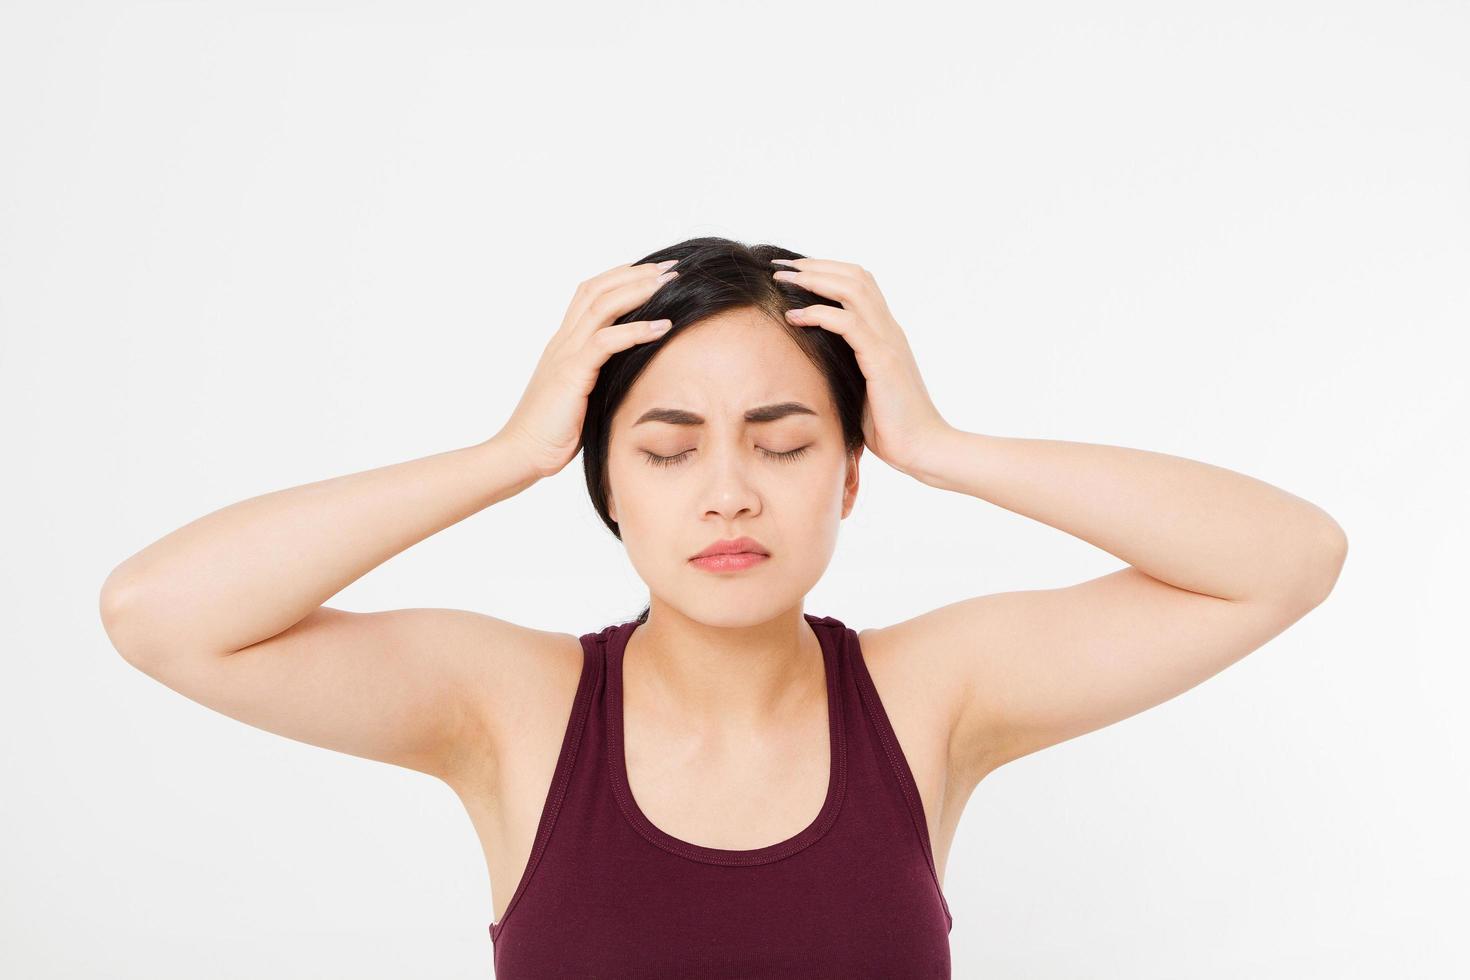 donna giapponese asiatica esausta stressata che ha un forte mal di testa da tensione. ritratto di ragazza malata che soffre di emicrania alla testa, sensazione di pressione e stress. dolore e salute. copia spazio. foto